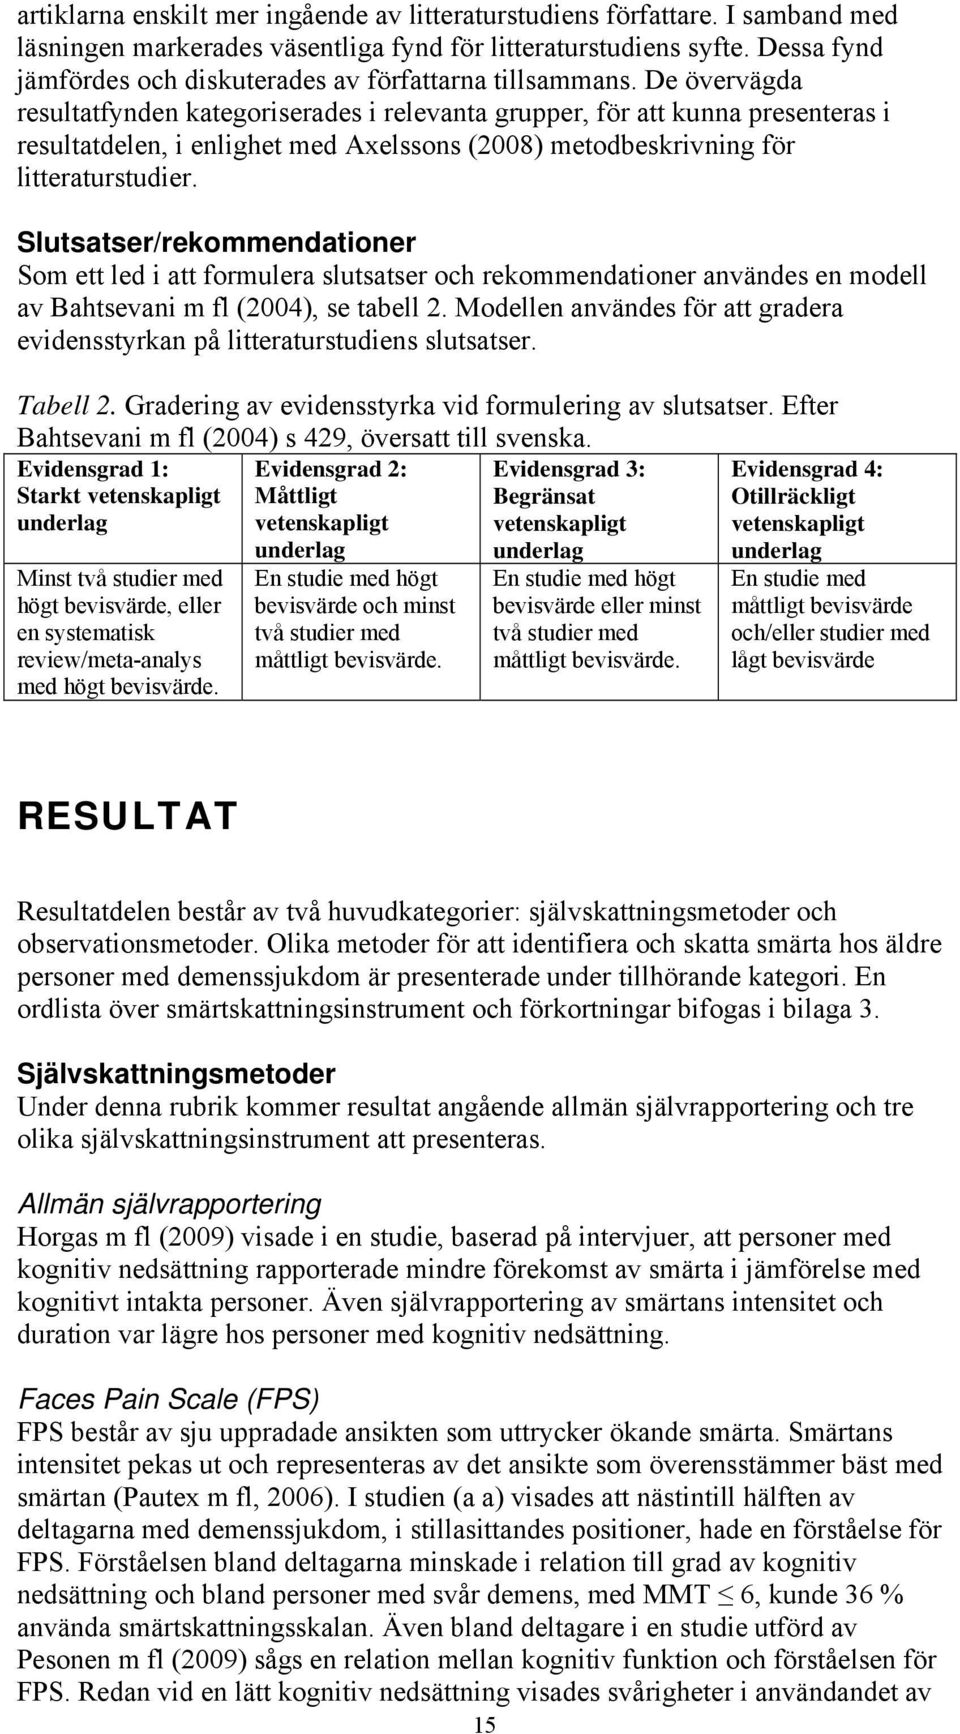 De övervägda resultatfynden kategoriserades i relevanta grupper, för att kunna presenteras i resultatdelen, i enlighet med Axelssons (2008) metodbeskrivning för litteraturstudier.